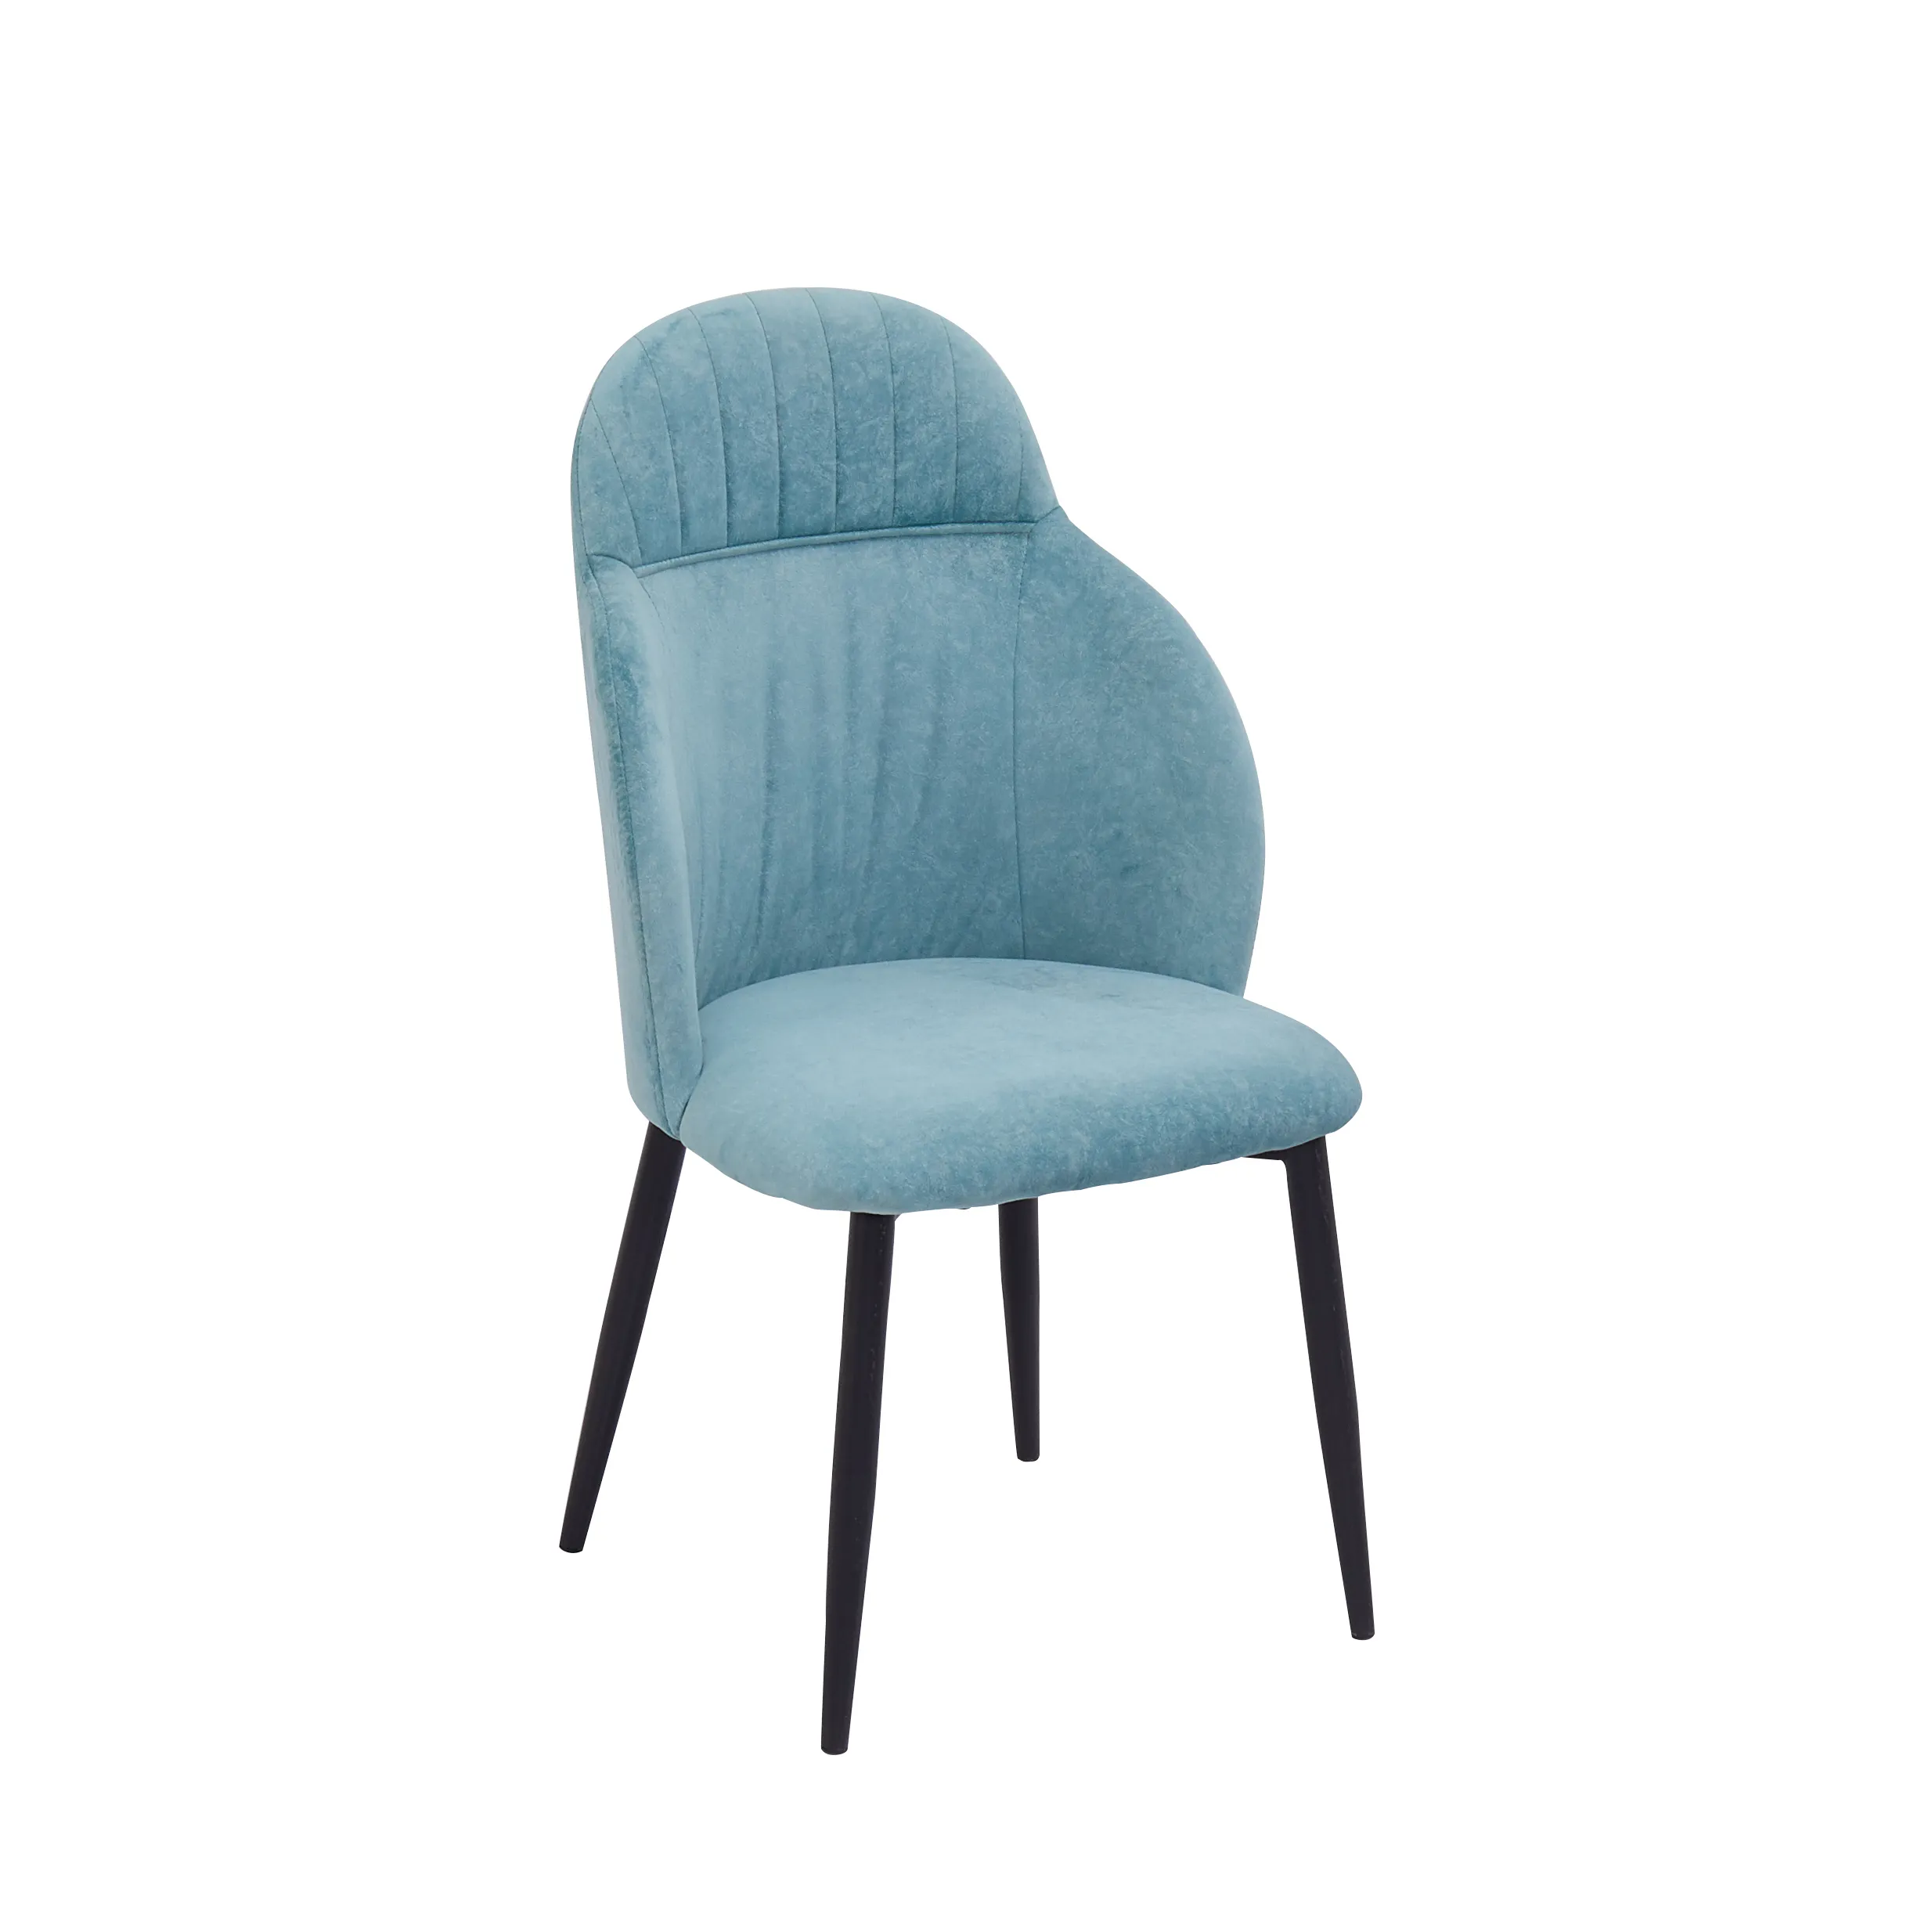 Комфортное бархатное кресло с мягкой обивкой синего цвета, бархатные металлические ножки для офисной мебели с порошковым покрытием